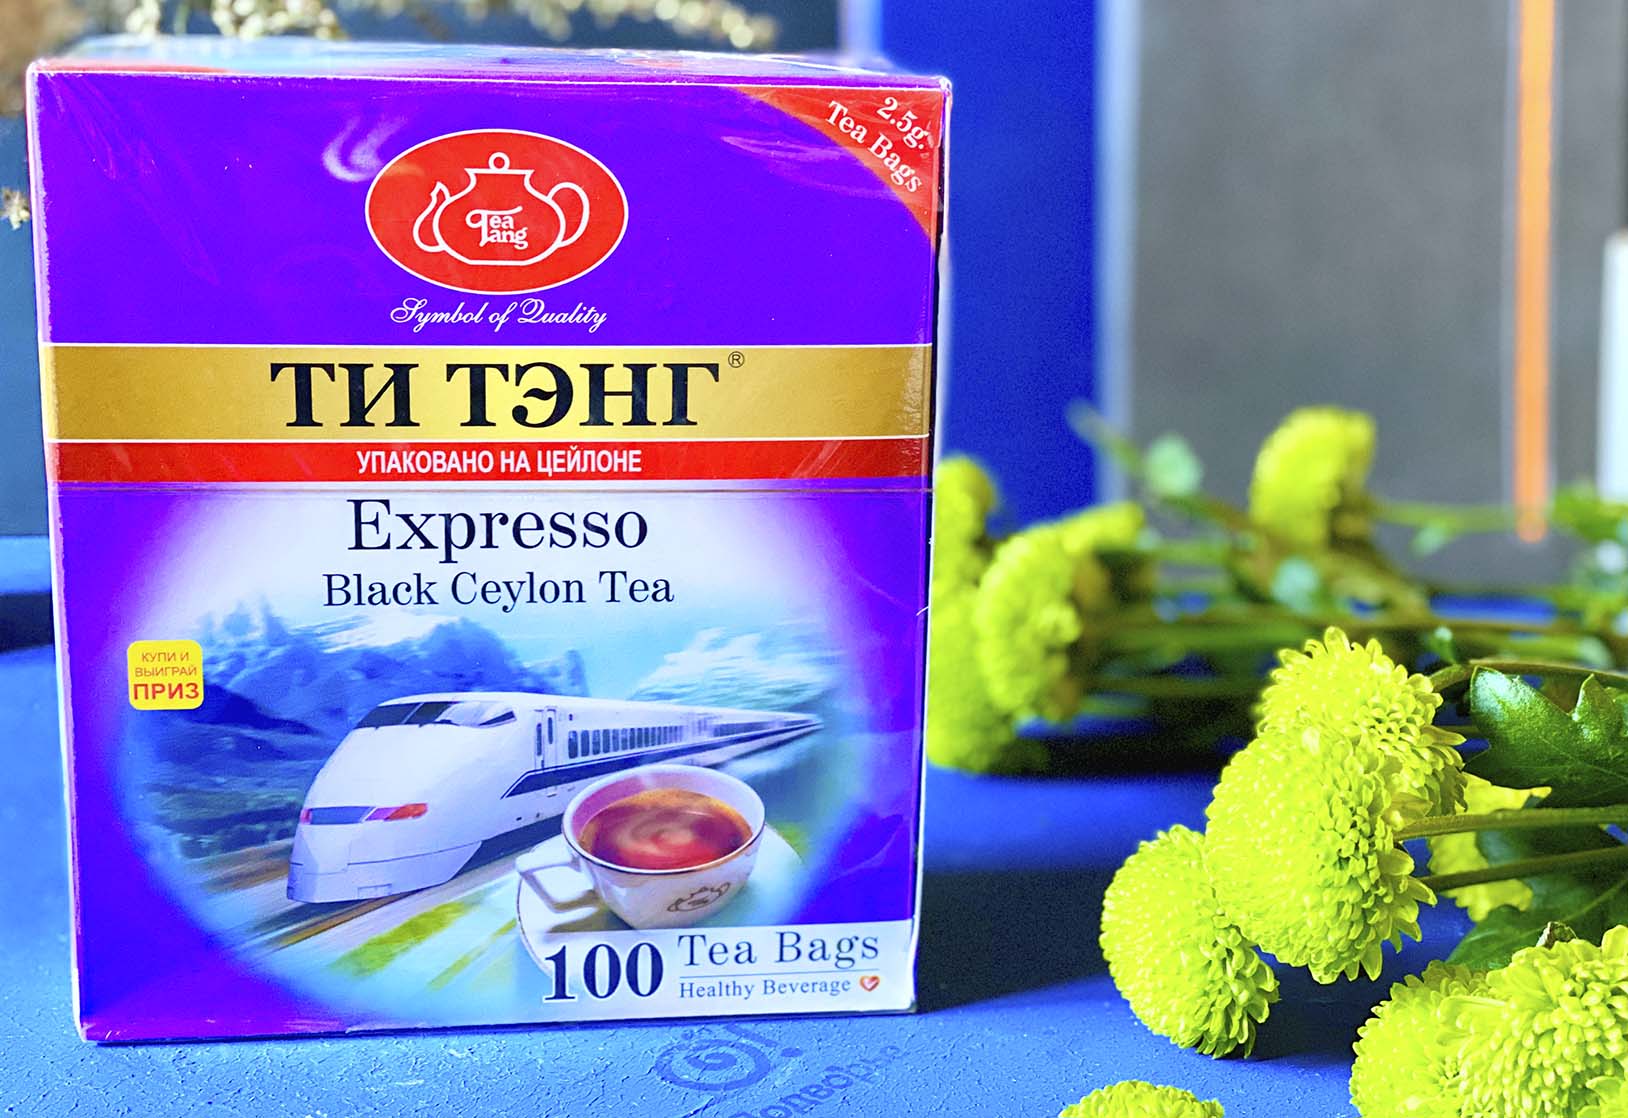 Черный чай ТИ ТЭНГ  Expresso пакетированный 100 пакетов